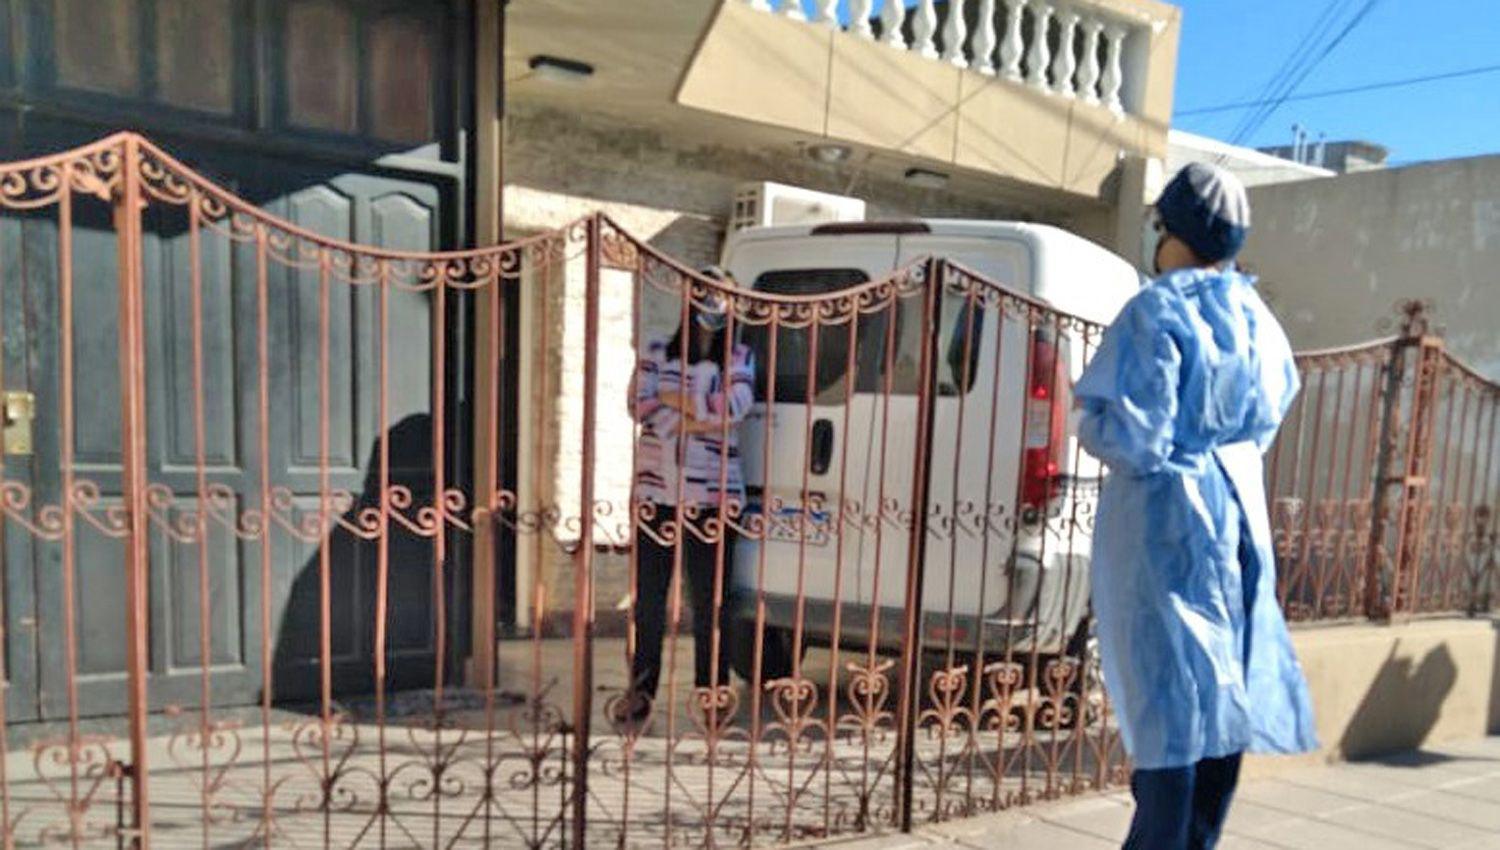 La comuna buscó ayer pacientes con síntomas en el barrio Alberdi
Adem�s continuar� hoy con la sanitización en la zona bancaria